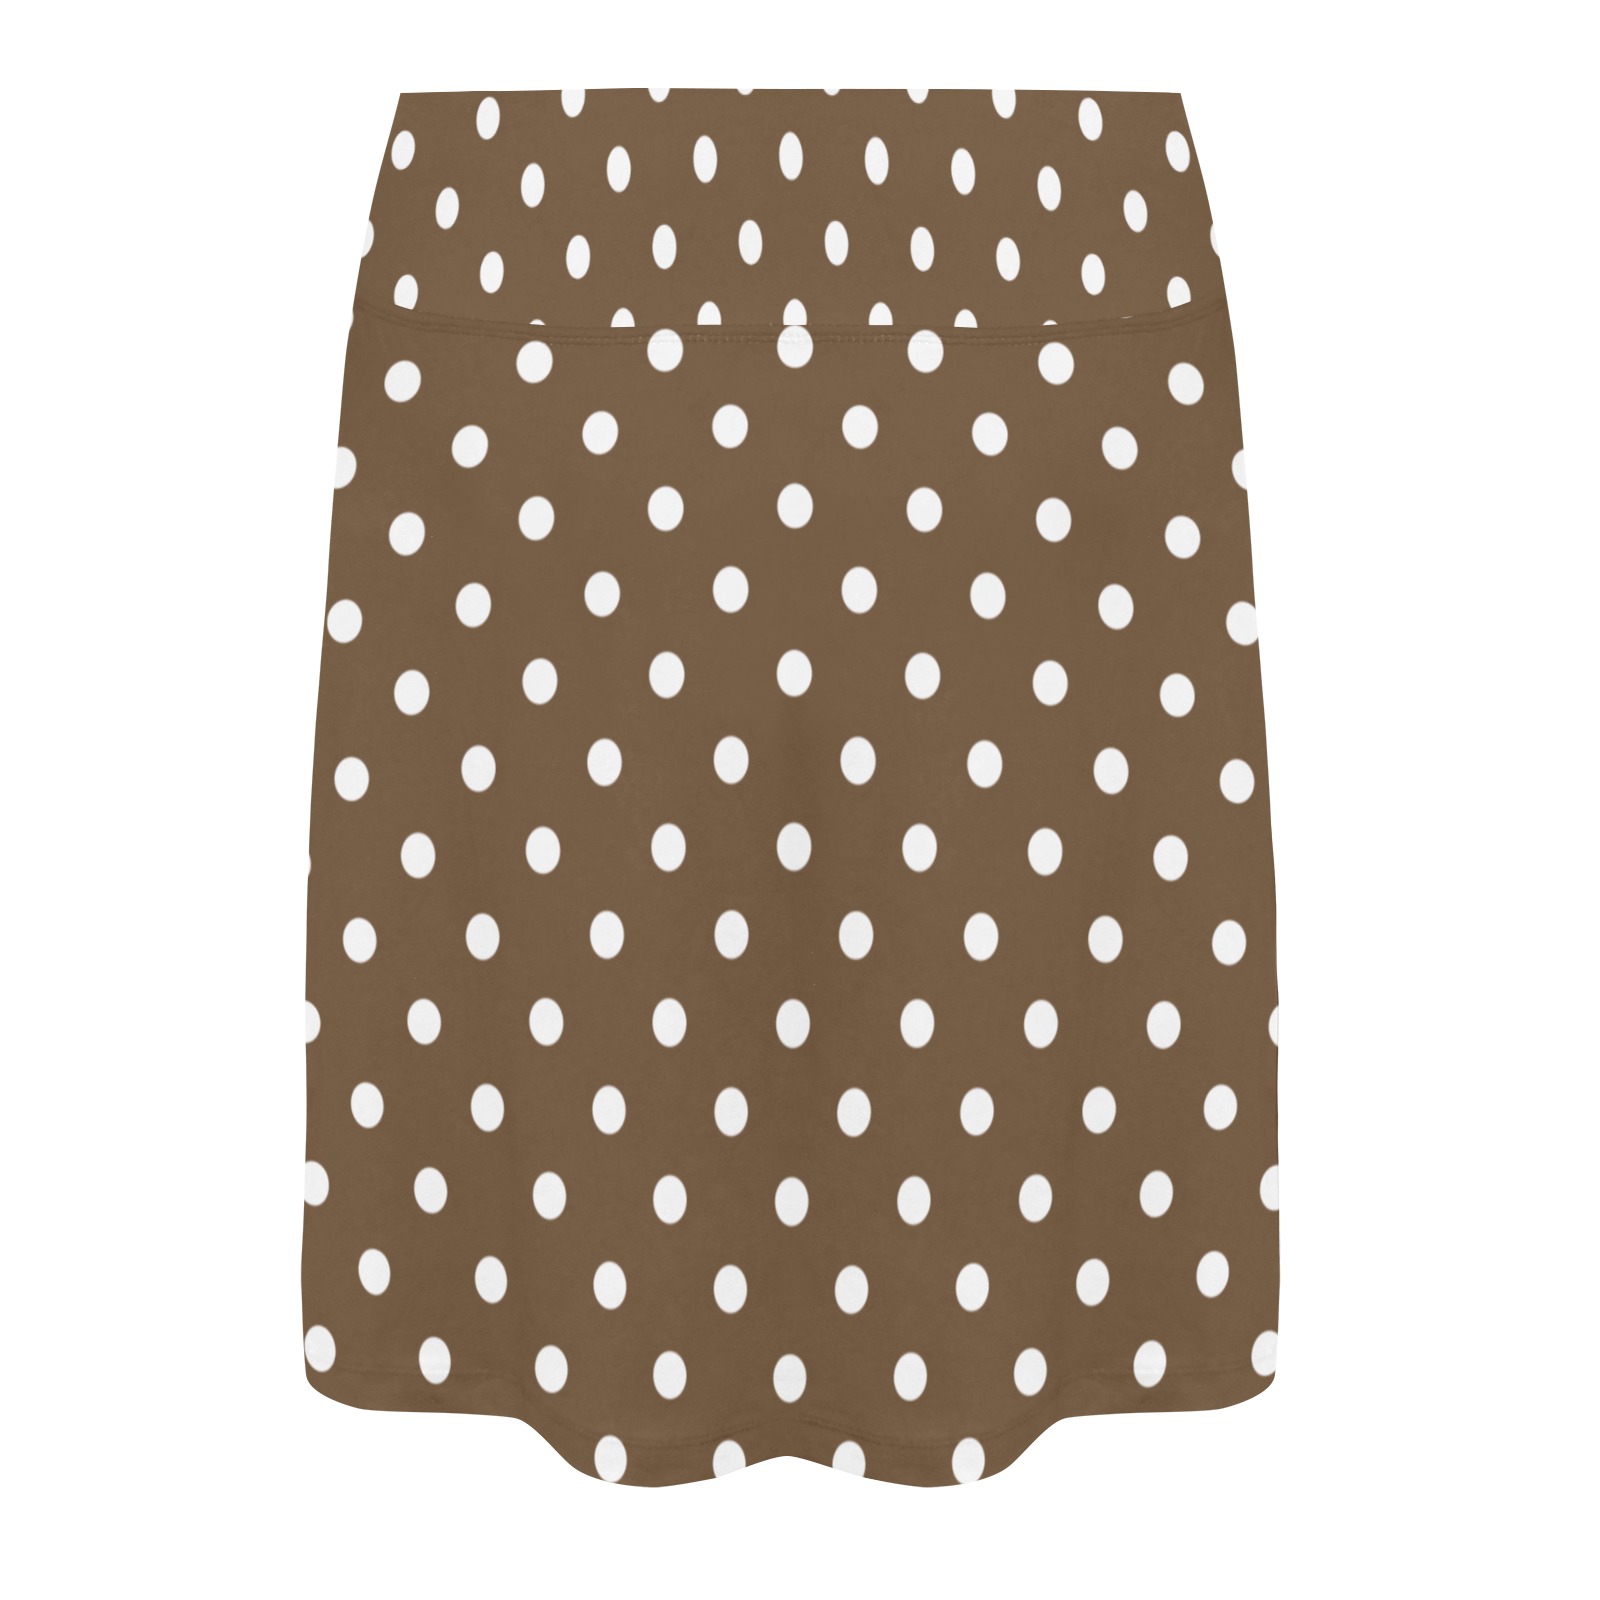 Polka Dots White - Brown Women's Athletic Skirt (Model D64)